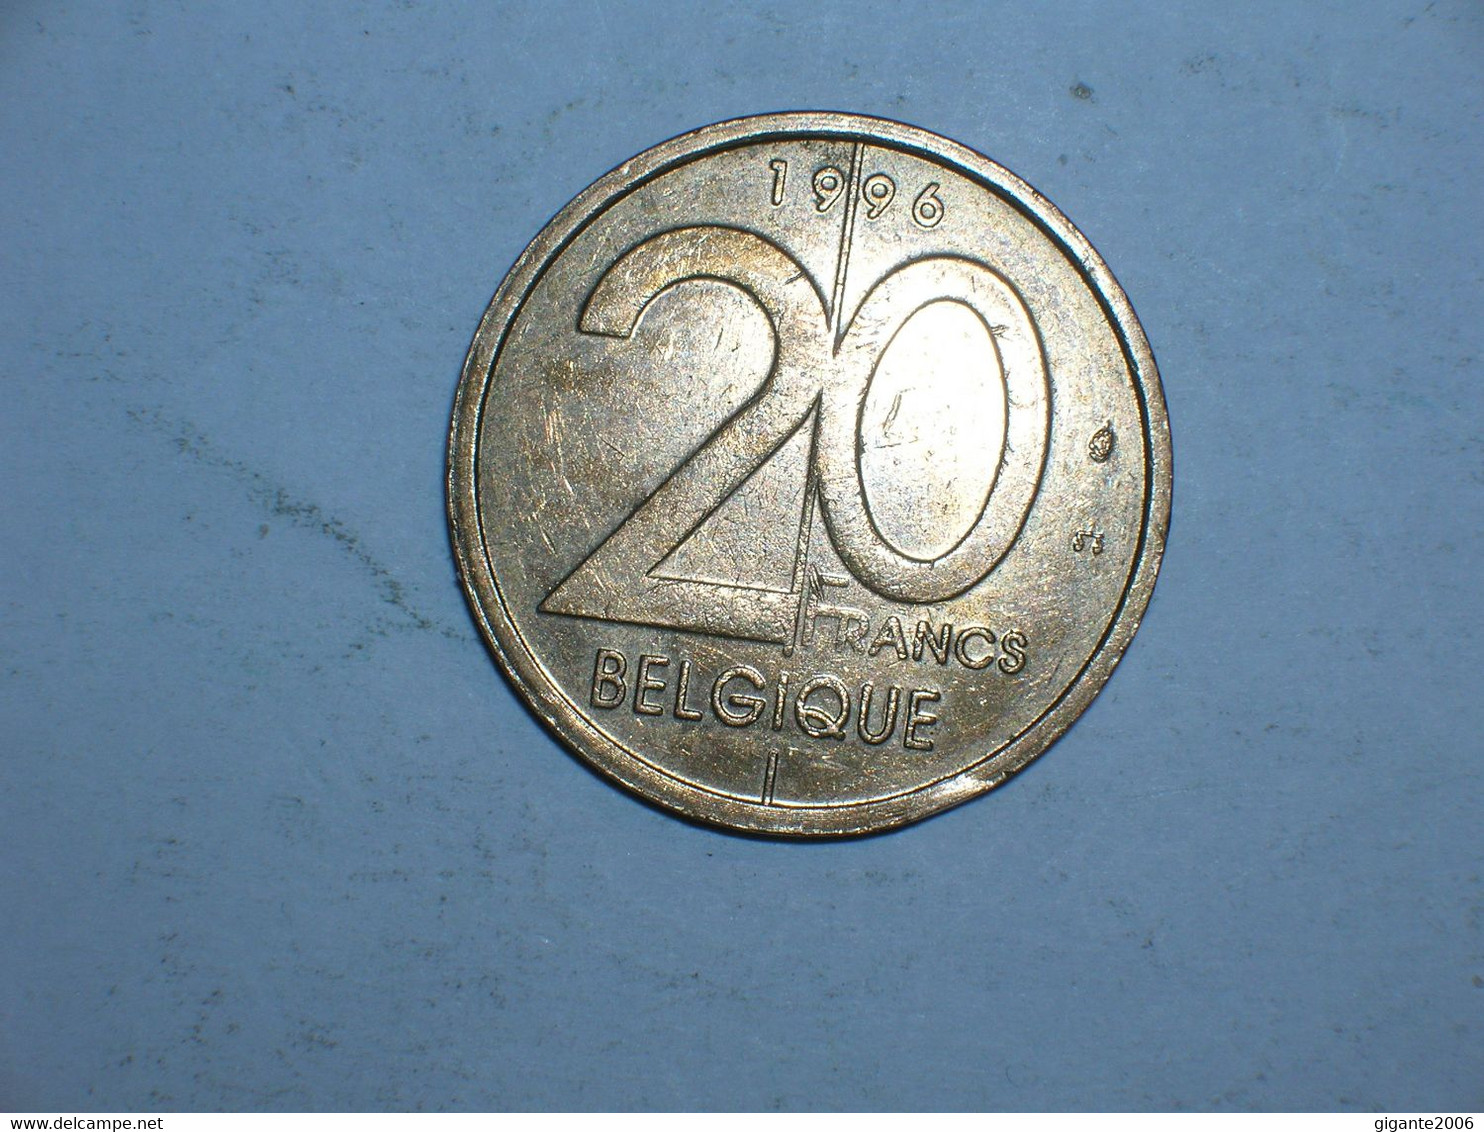 BELGICA 20 FRANCOS 1996 FR (9299) - 20 Francs